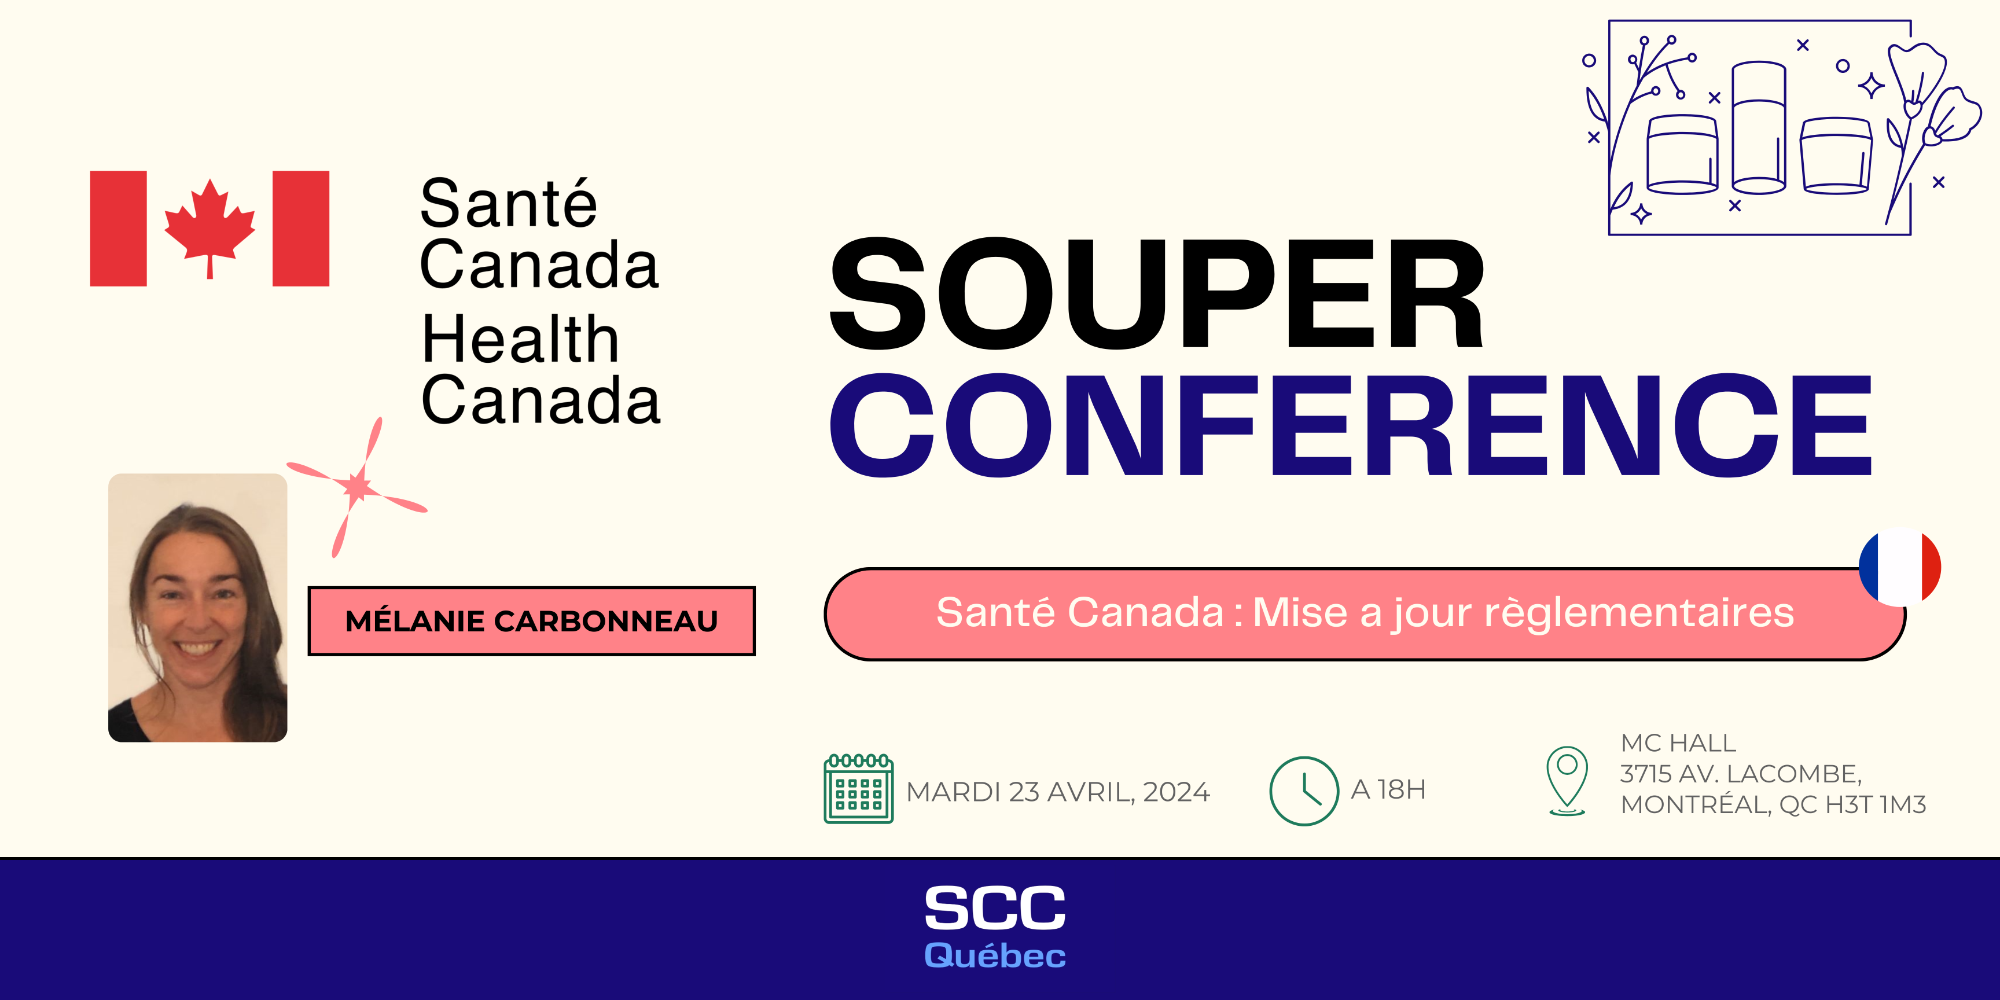 Souper conférence: Santé Canada, Mise à jour réglementaire